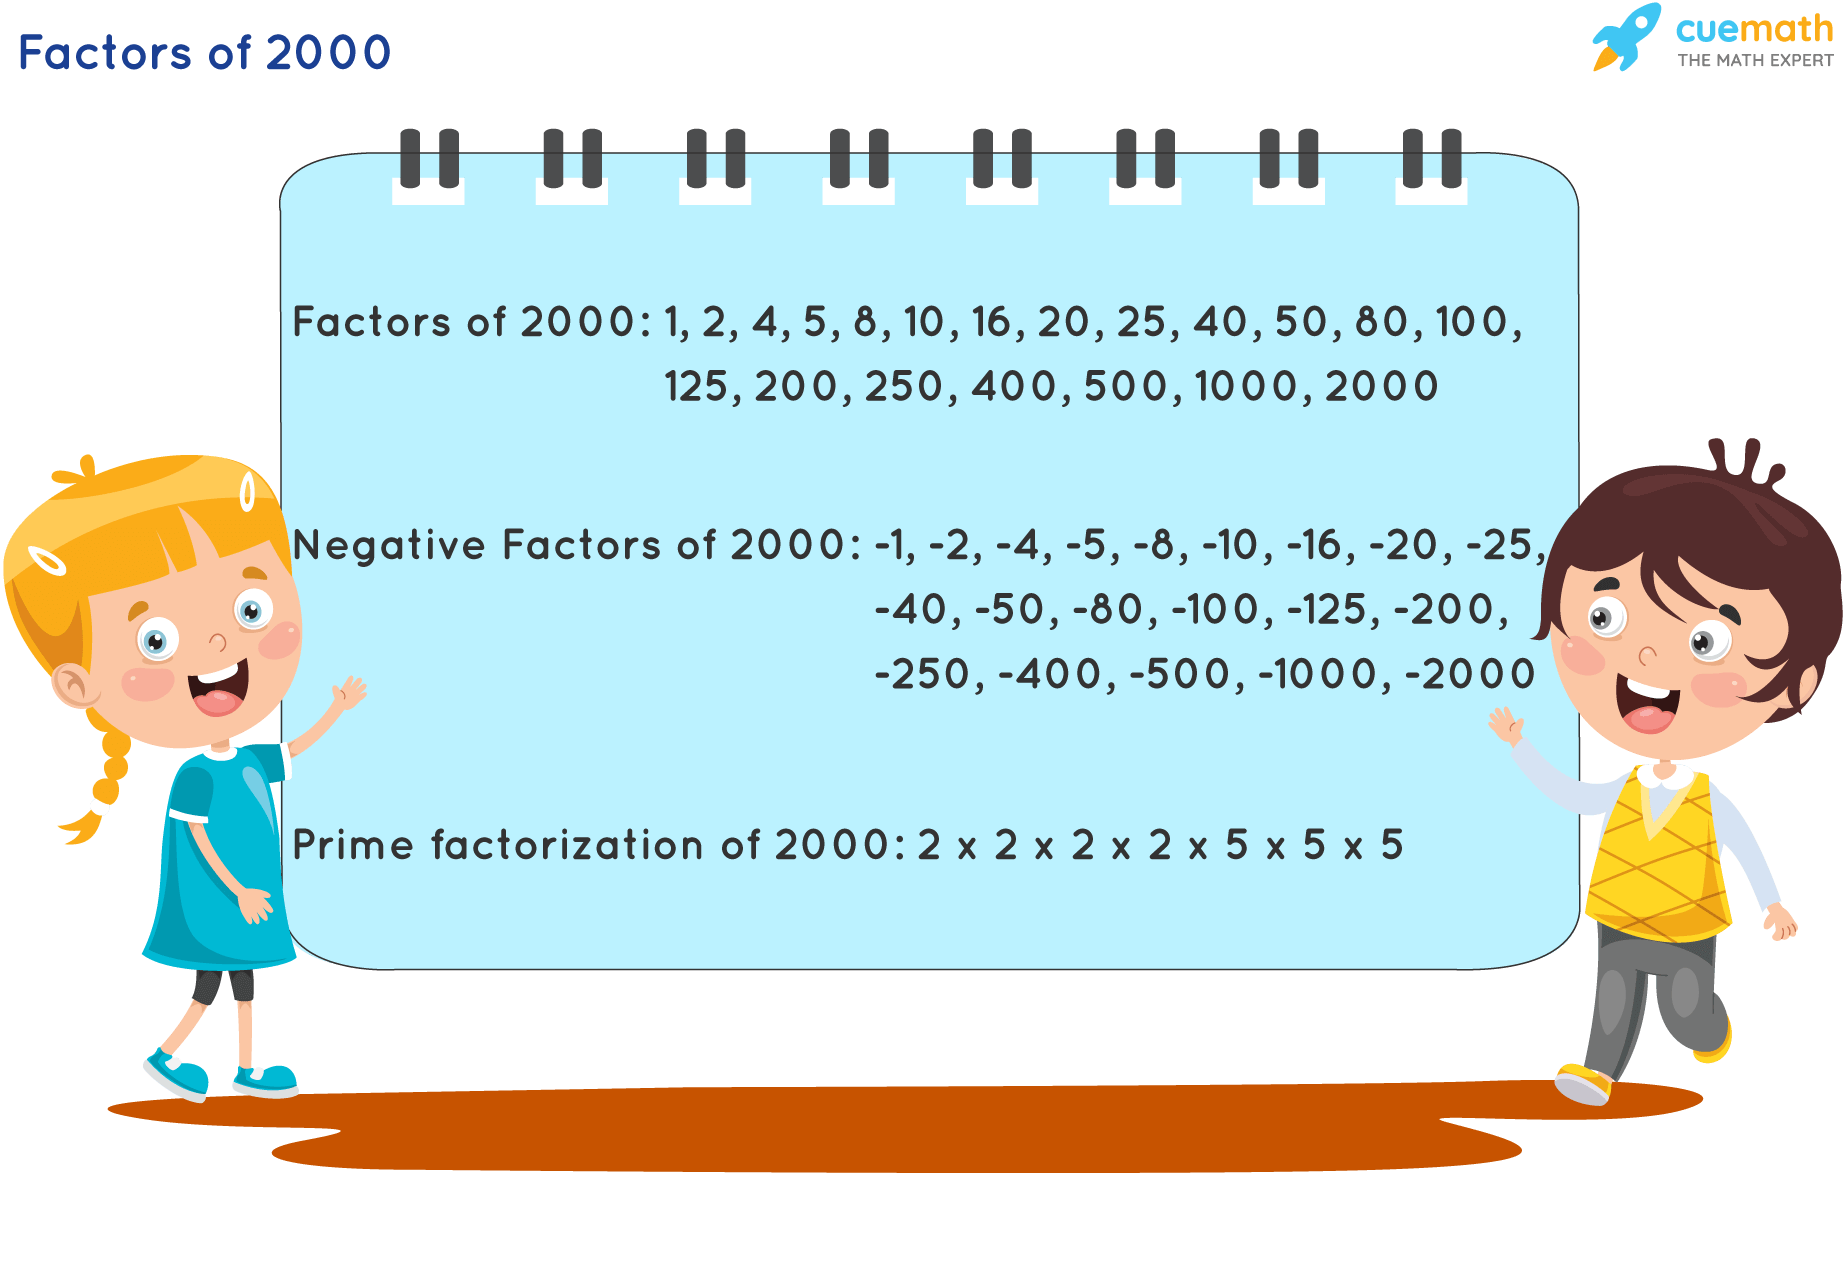 Factors of 2000